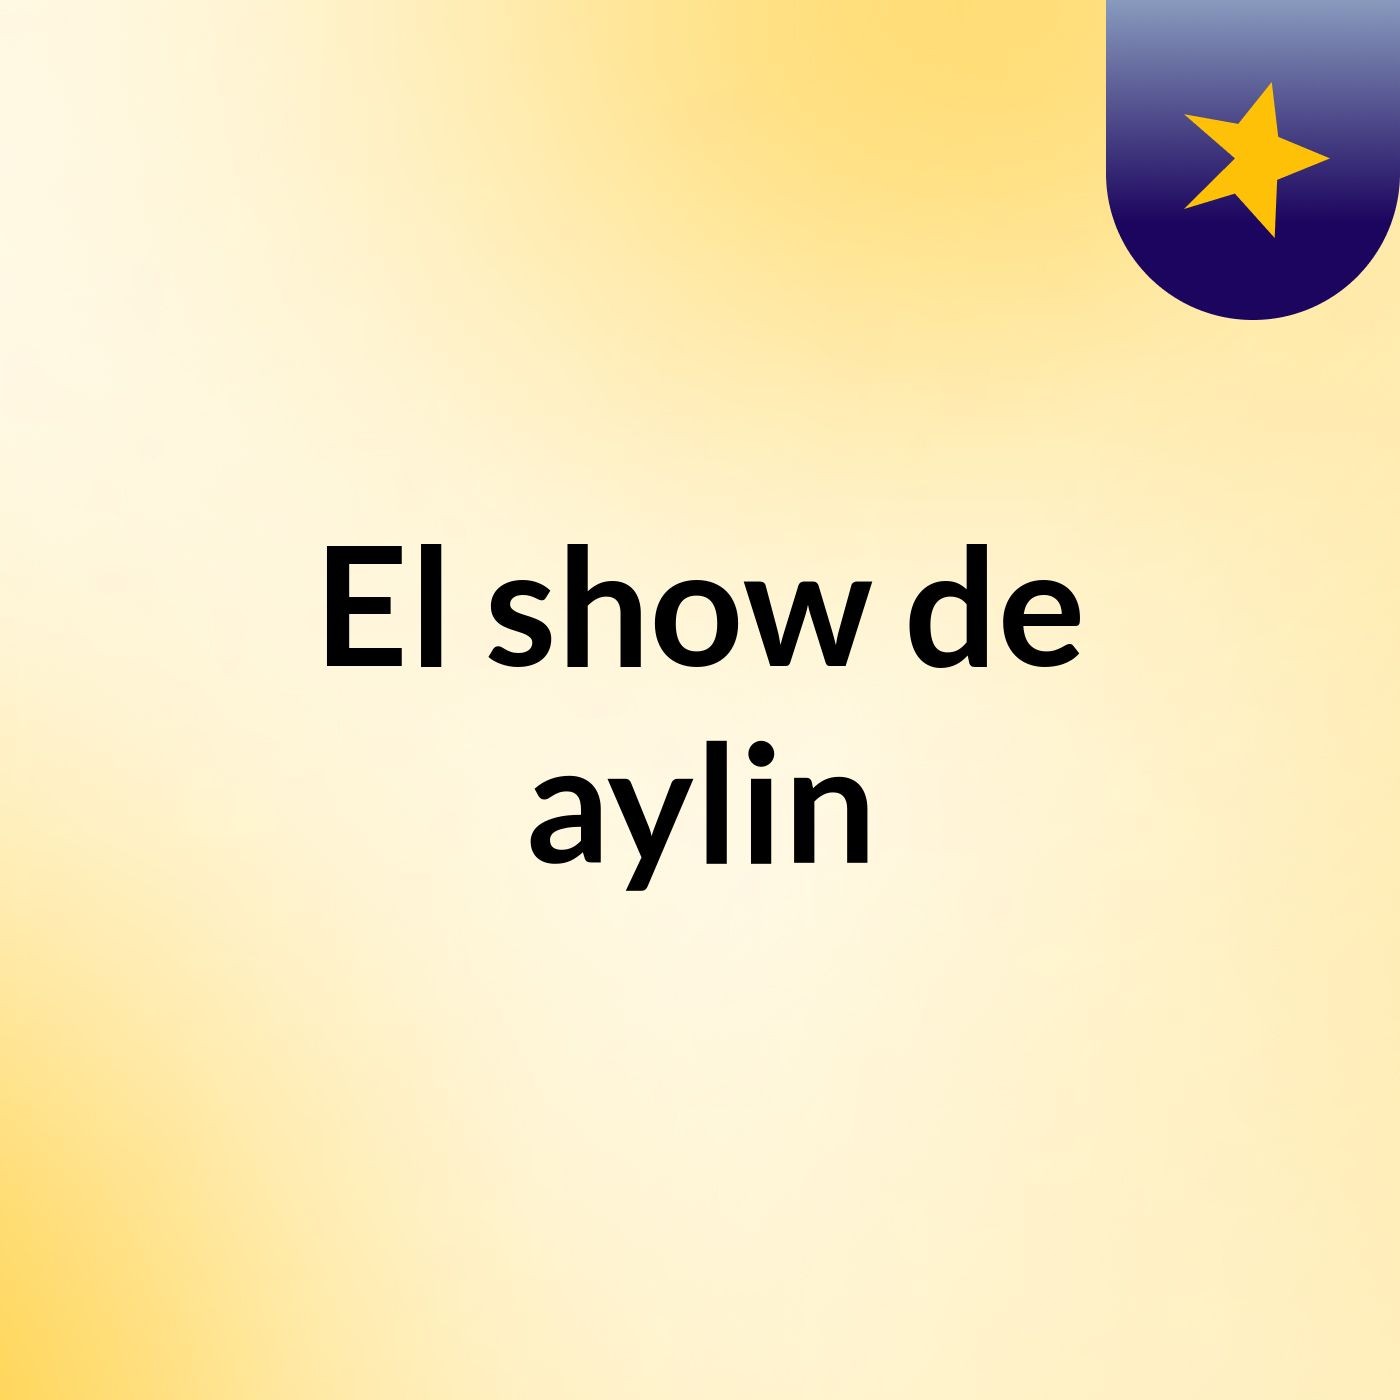 El show de aylin